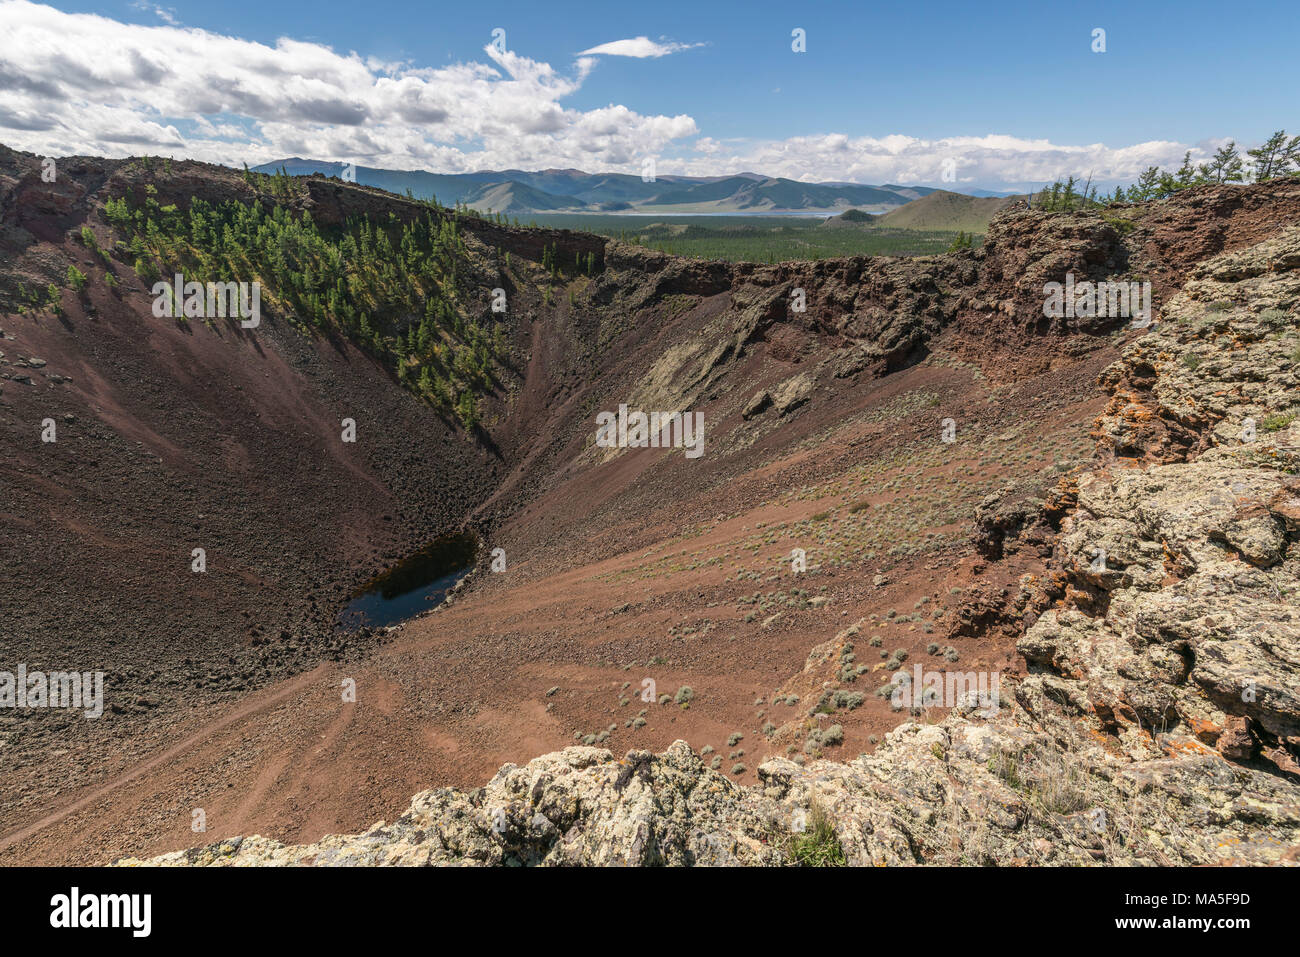 Cratère du volcan Khorgo et Lac Blanc en arrière-plan. Crétariat district, province du Nord, la Mongolie. Hangay Banque D'Images